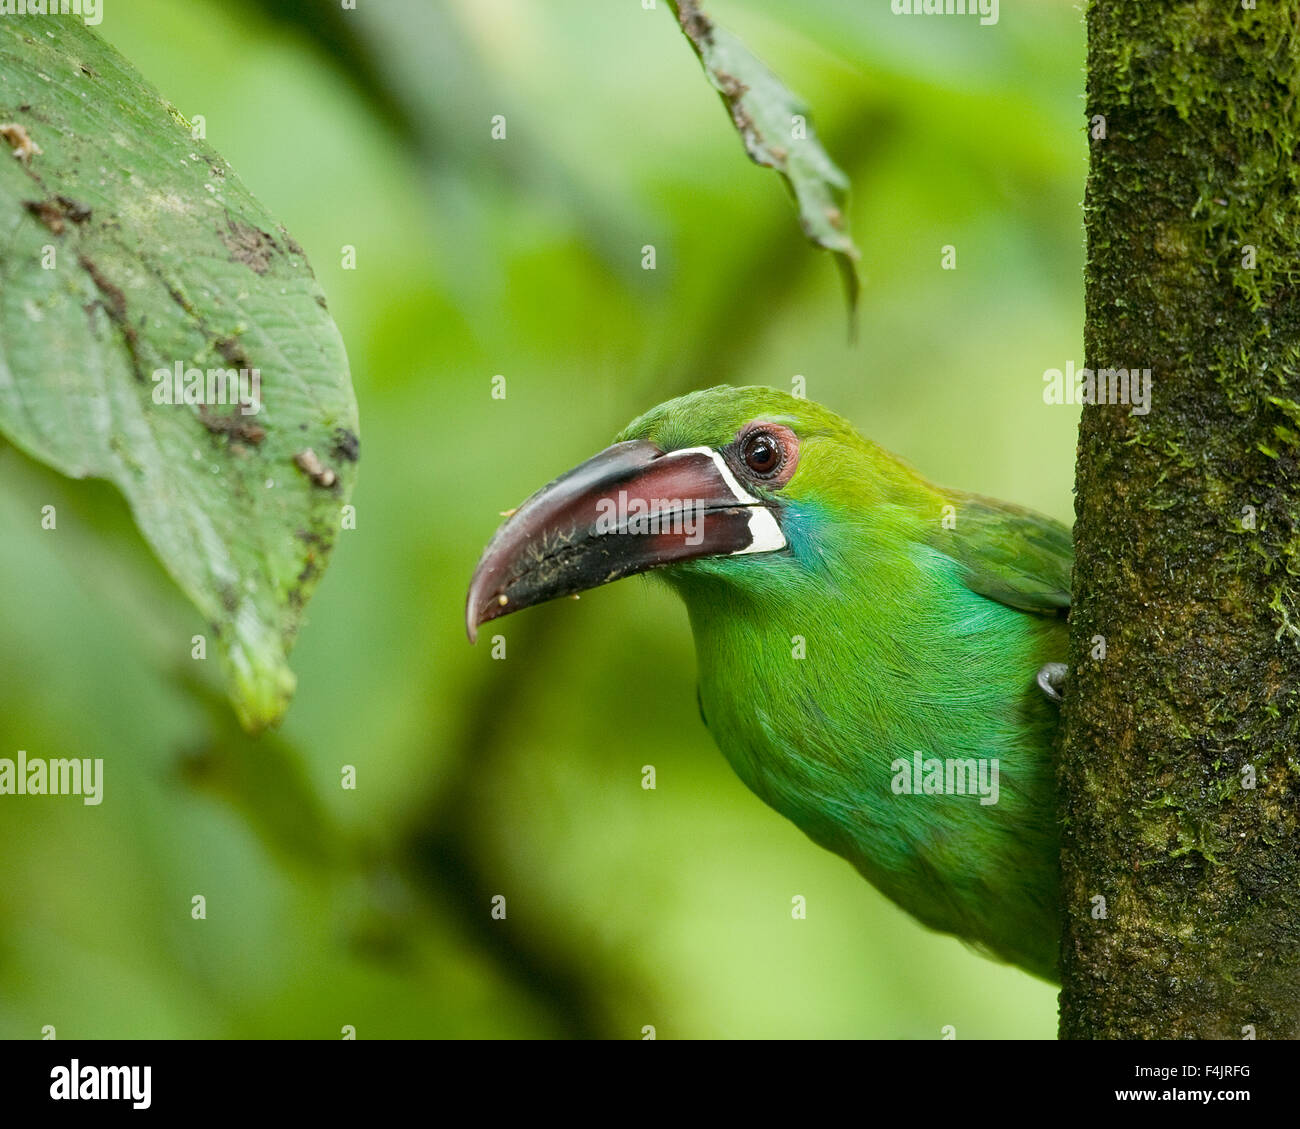 Avanti America becco grosso uccello close-up colore immagine Ecuador sguardo esotico verde giungla orizzontale non cercate persone all'aperto a PEEP Foto Stock